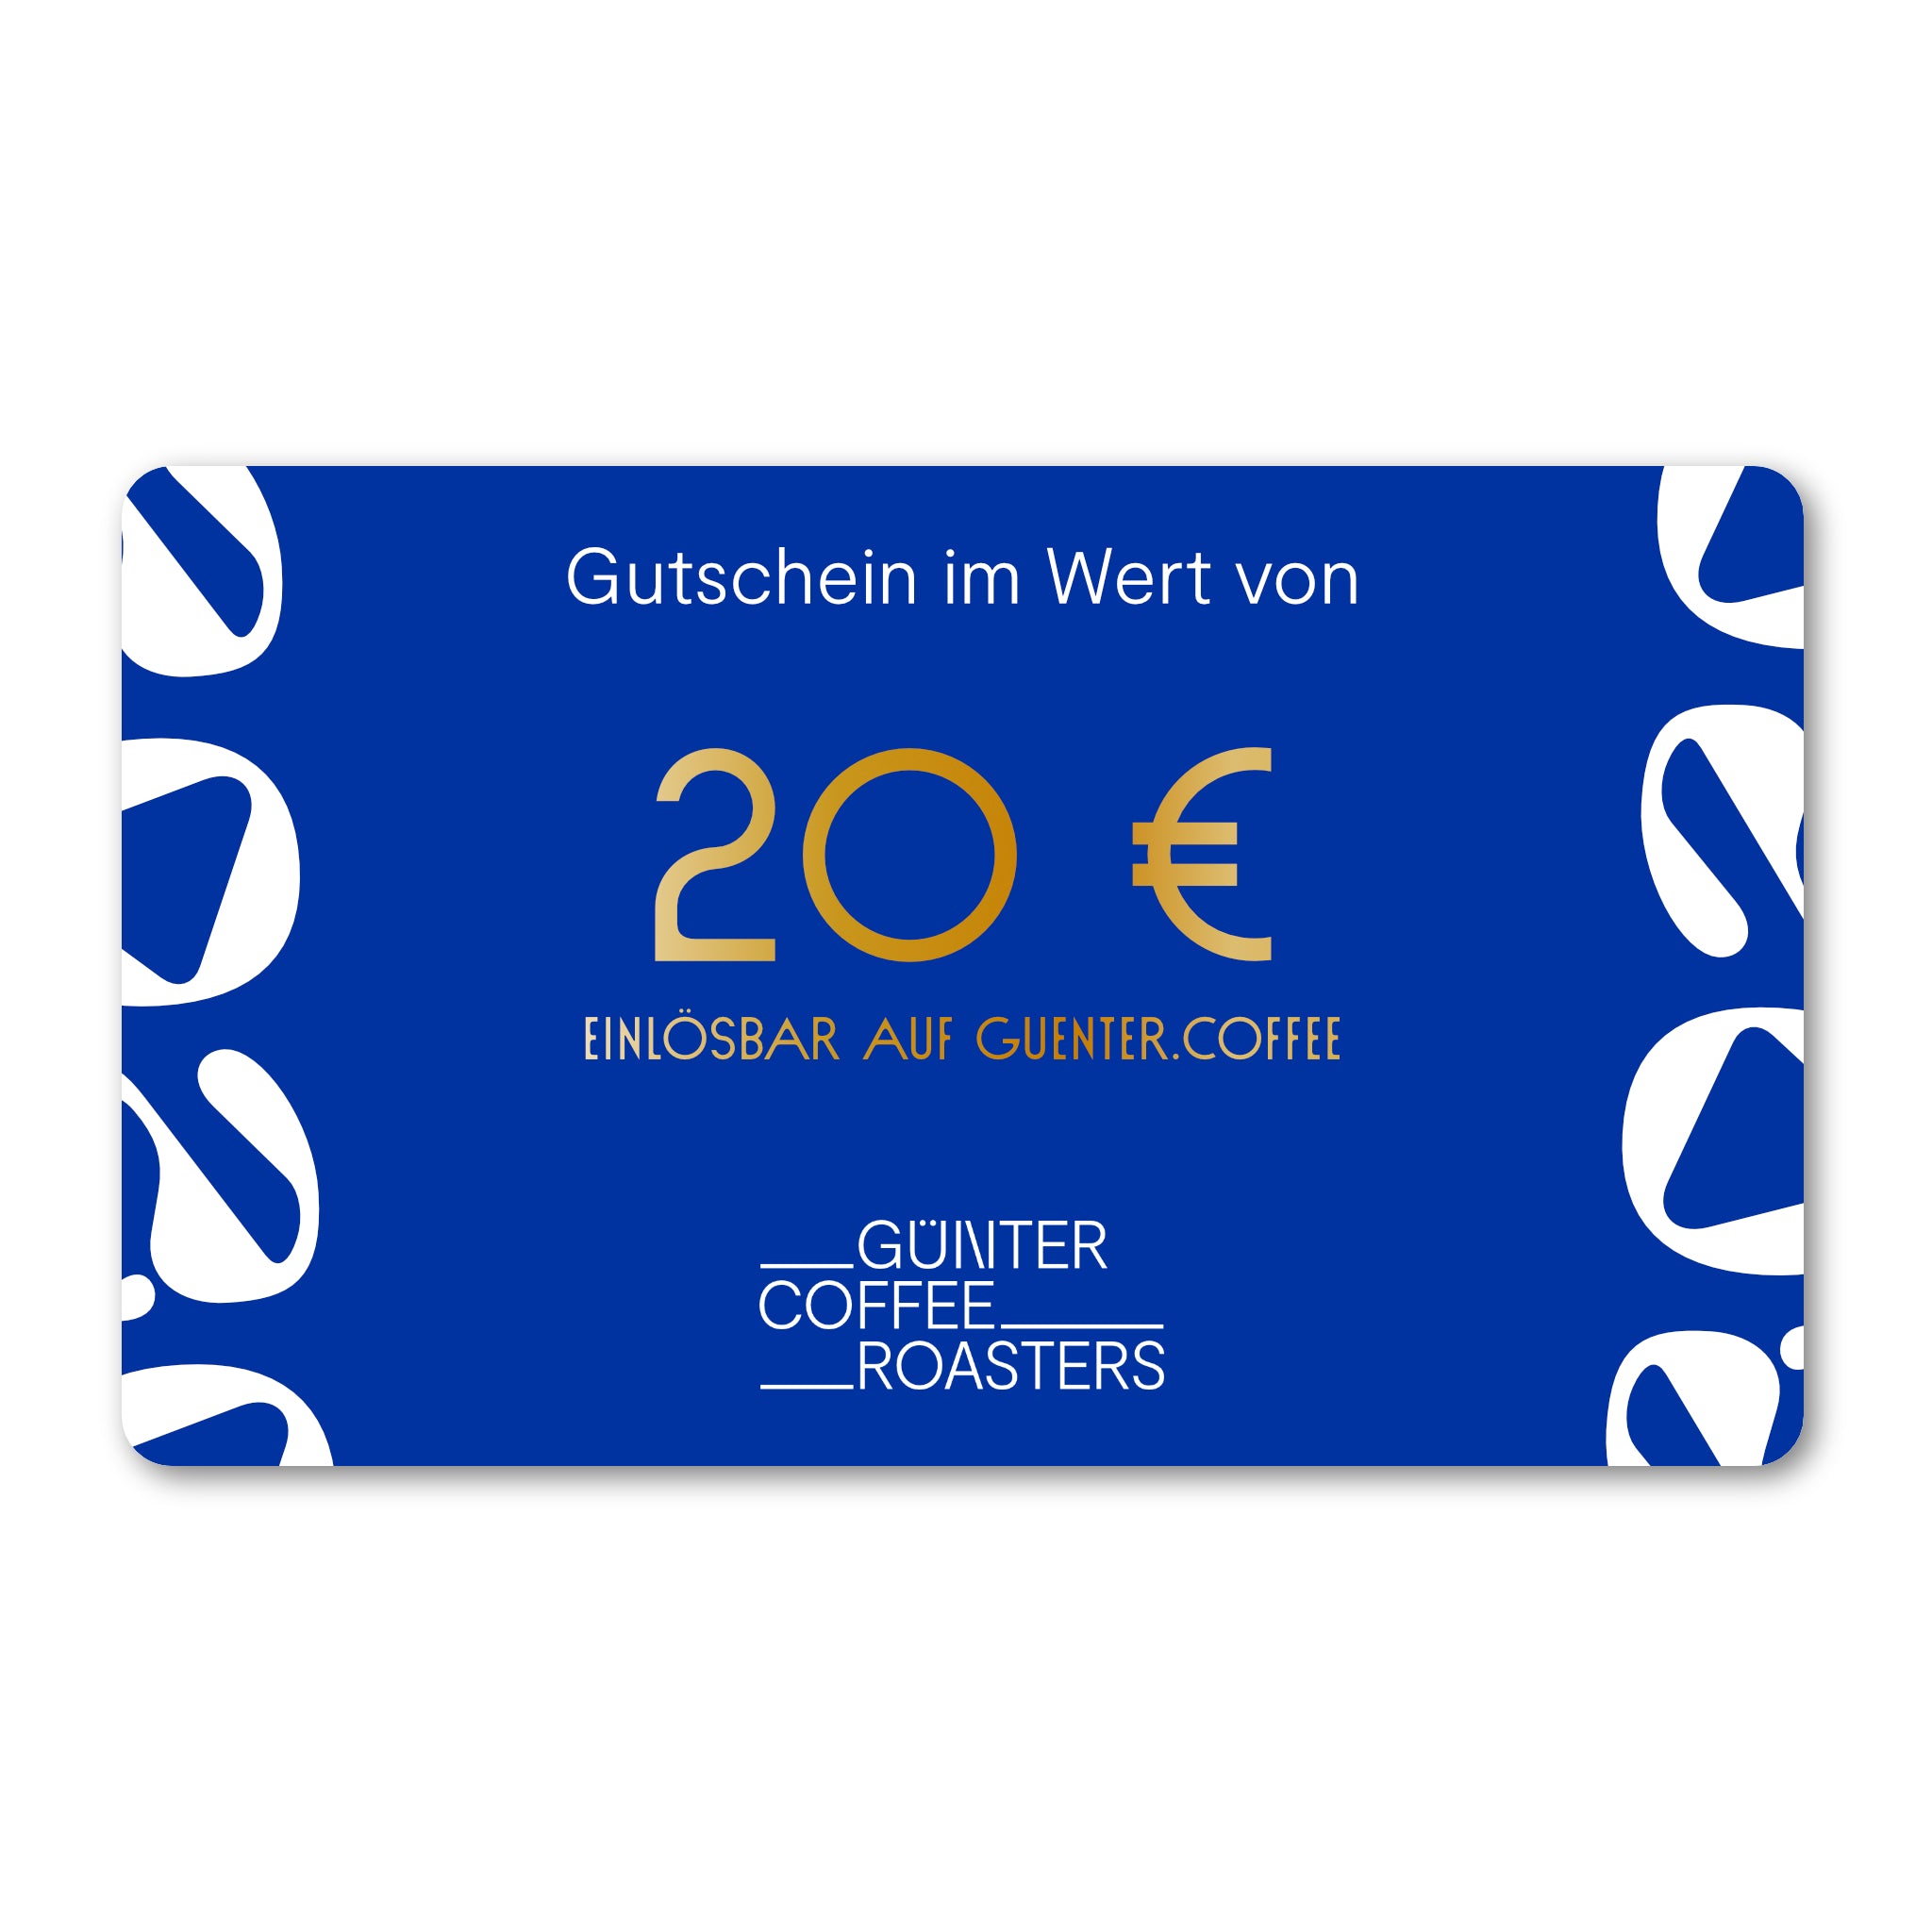 Produktbild digitaler Geschenkgutschein im Wert von 20 €.